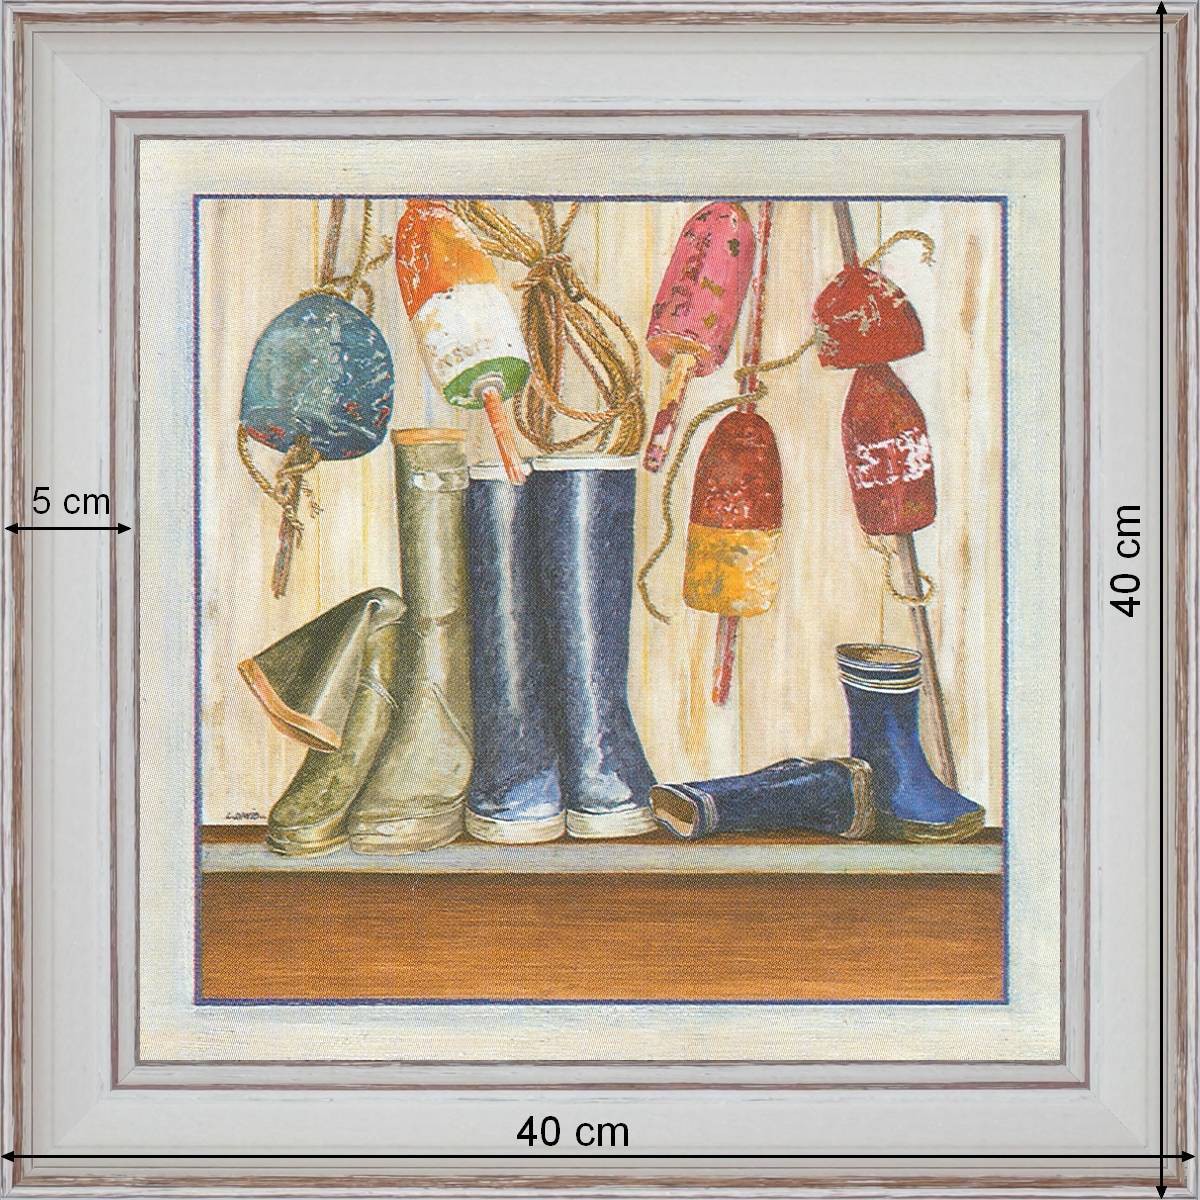 Sea boots - dimensions 40 x 40 cm - White